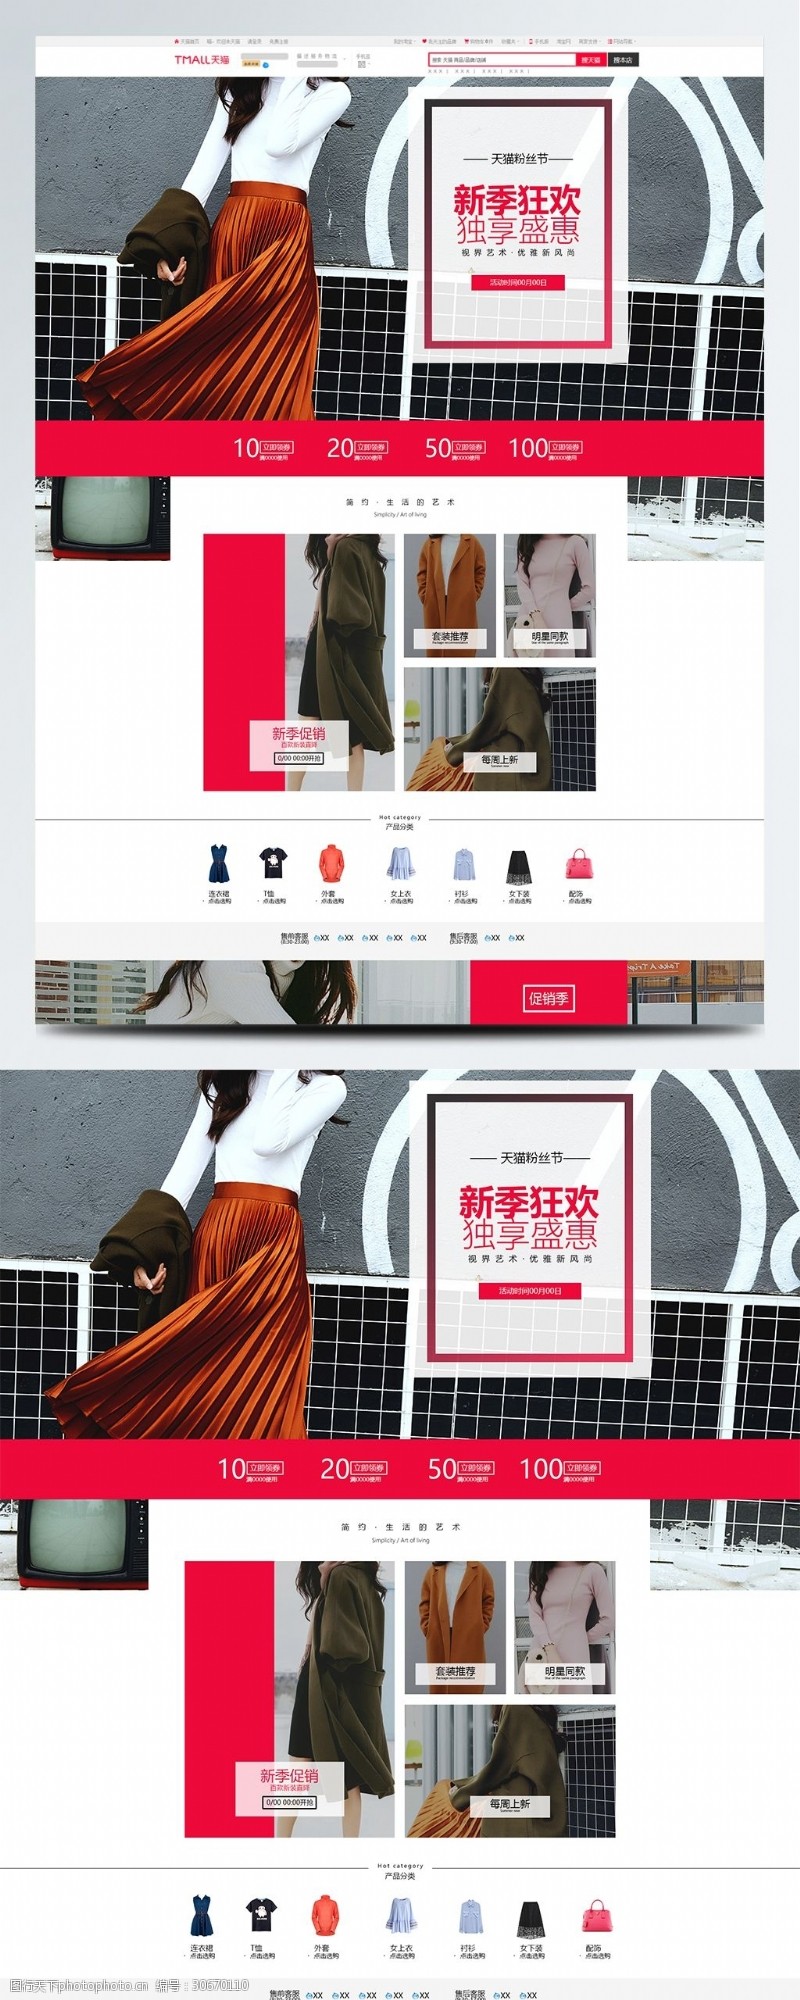 天天特惠天猫淘宝电商促销天猫粉丝节首页模板